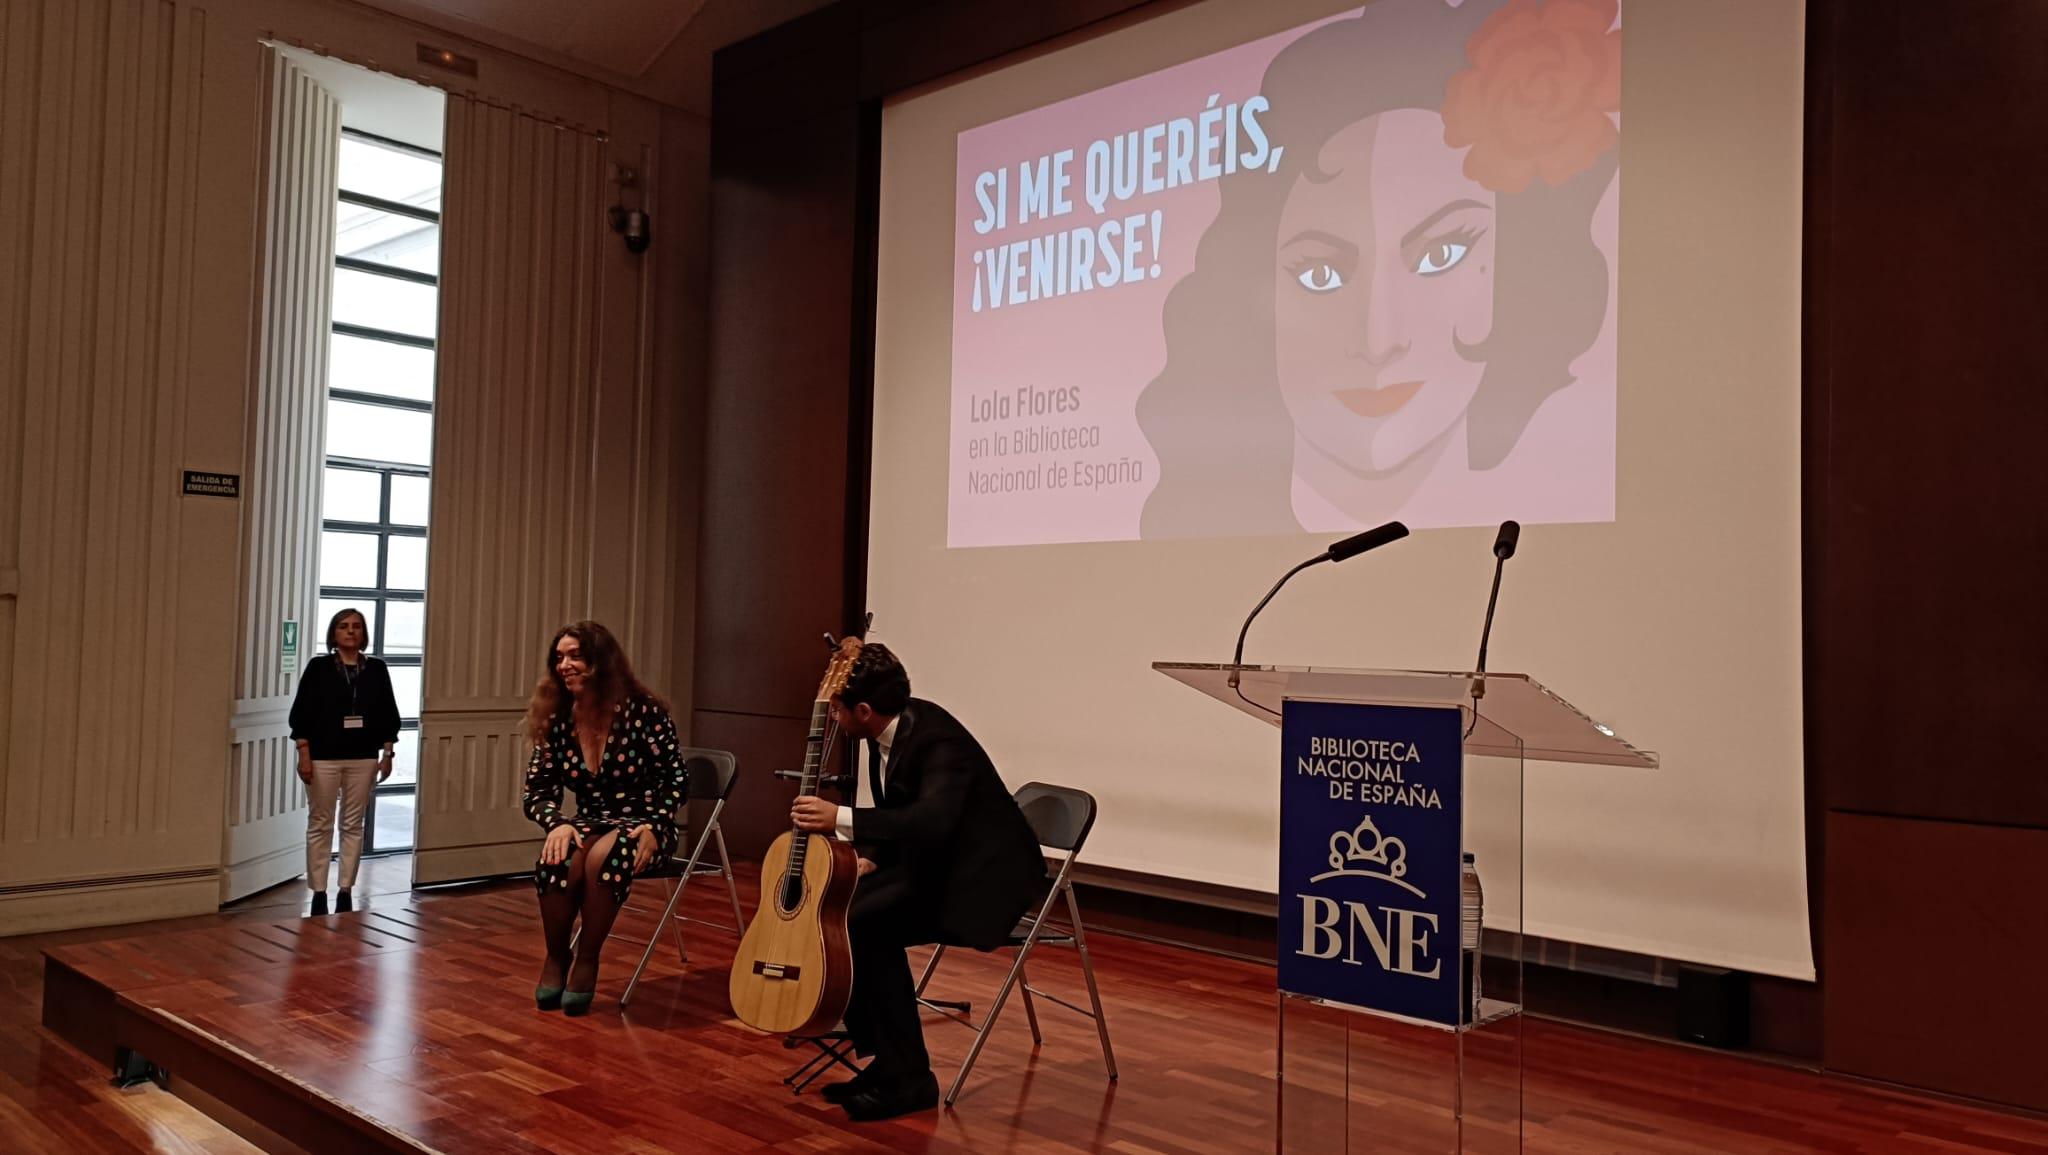 La Biblioteca Nacional de España homenajea a Lola Flores con la exposición 'Si me queréis, ¡venirse!'